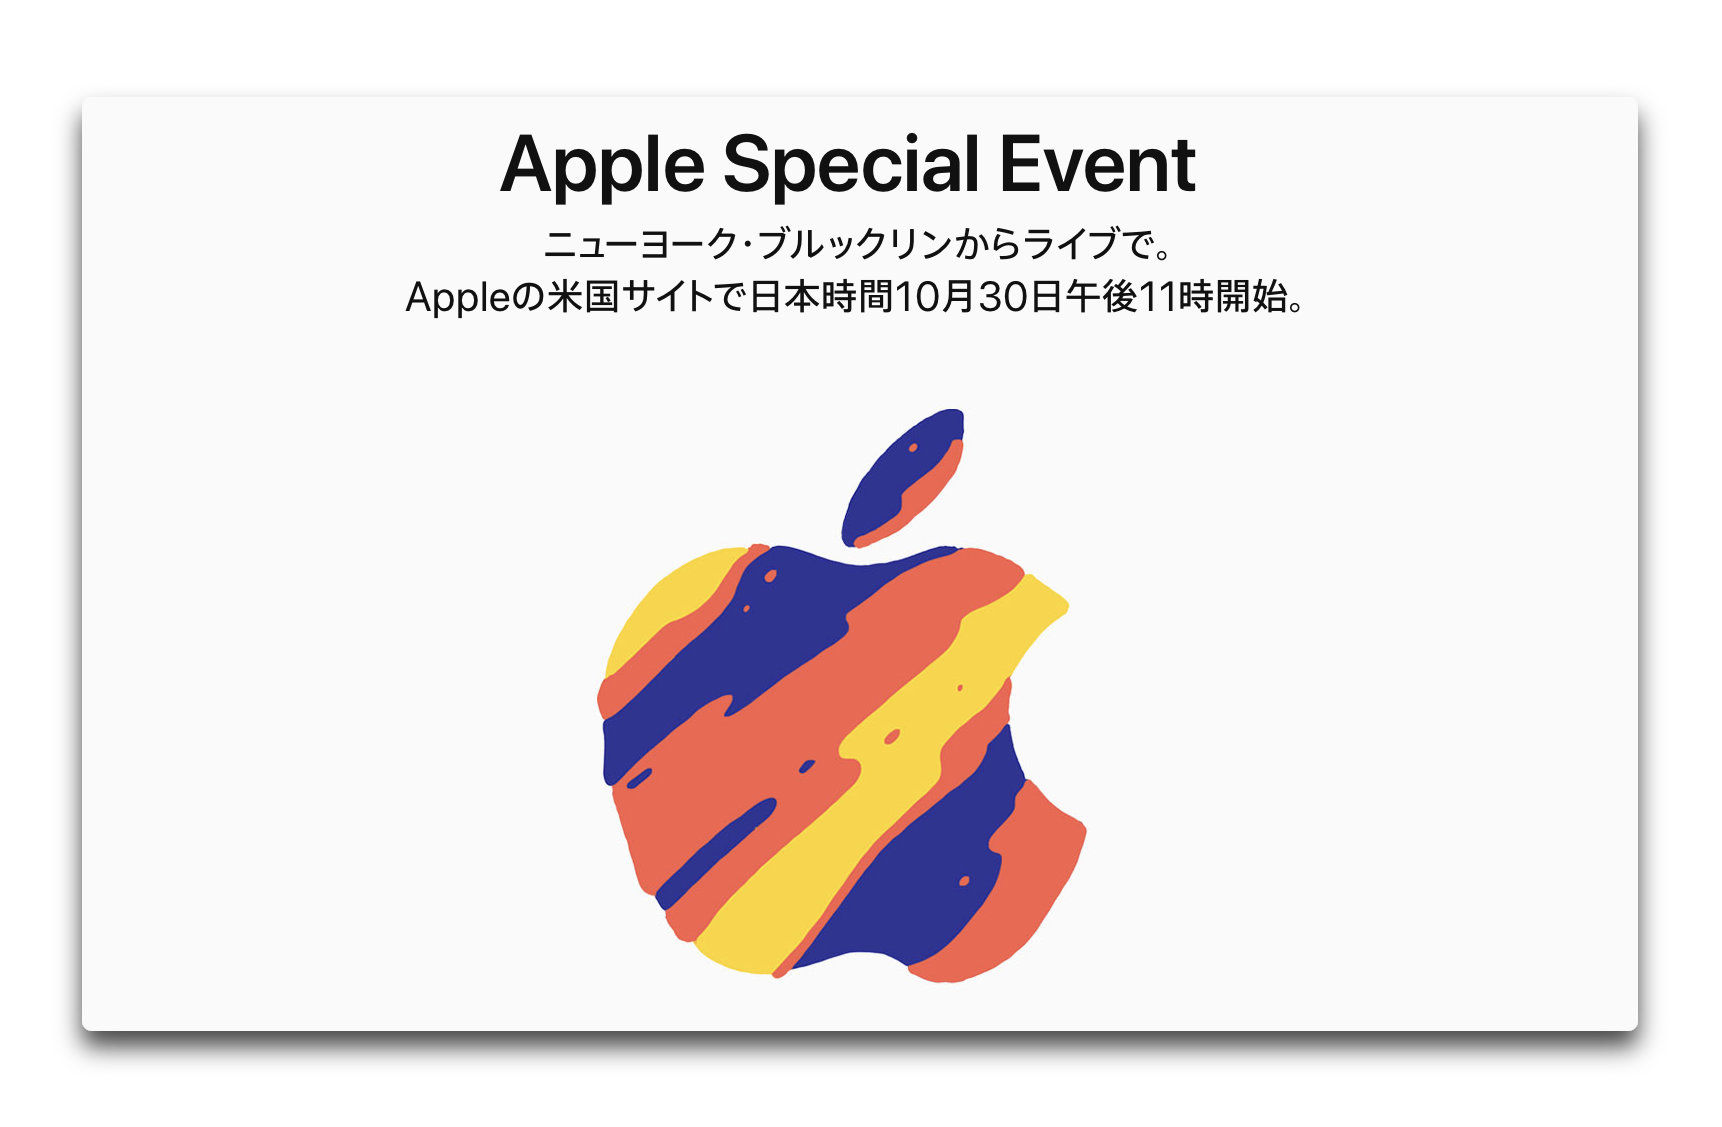 Apple、10月30日のiPad ProとMacのスペシャルイベントの招待状を発送